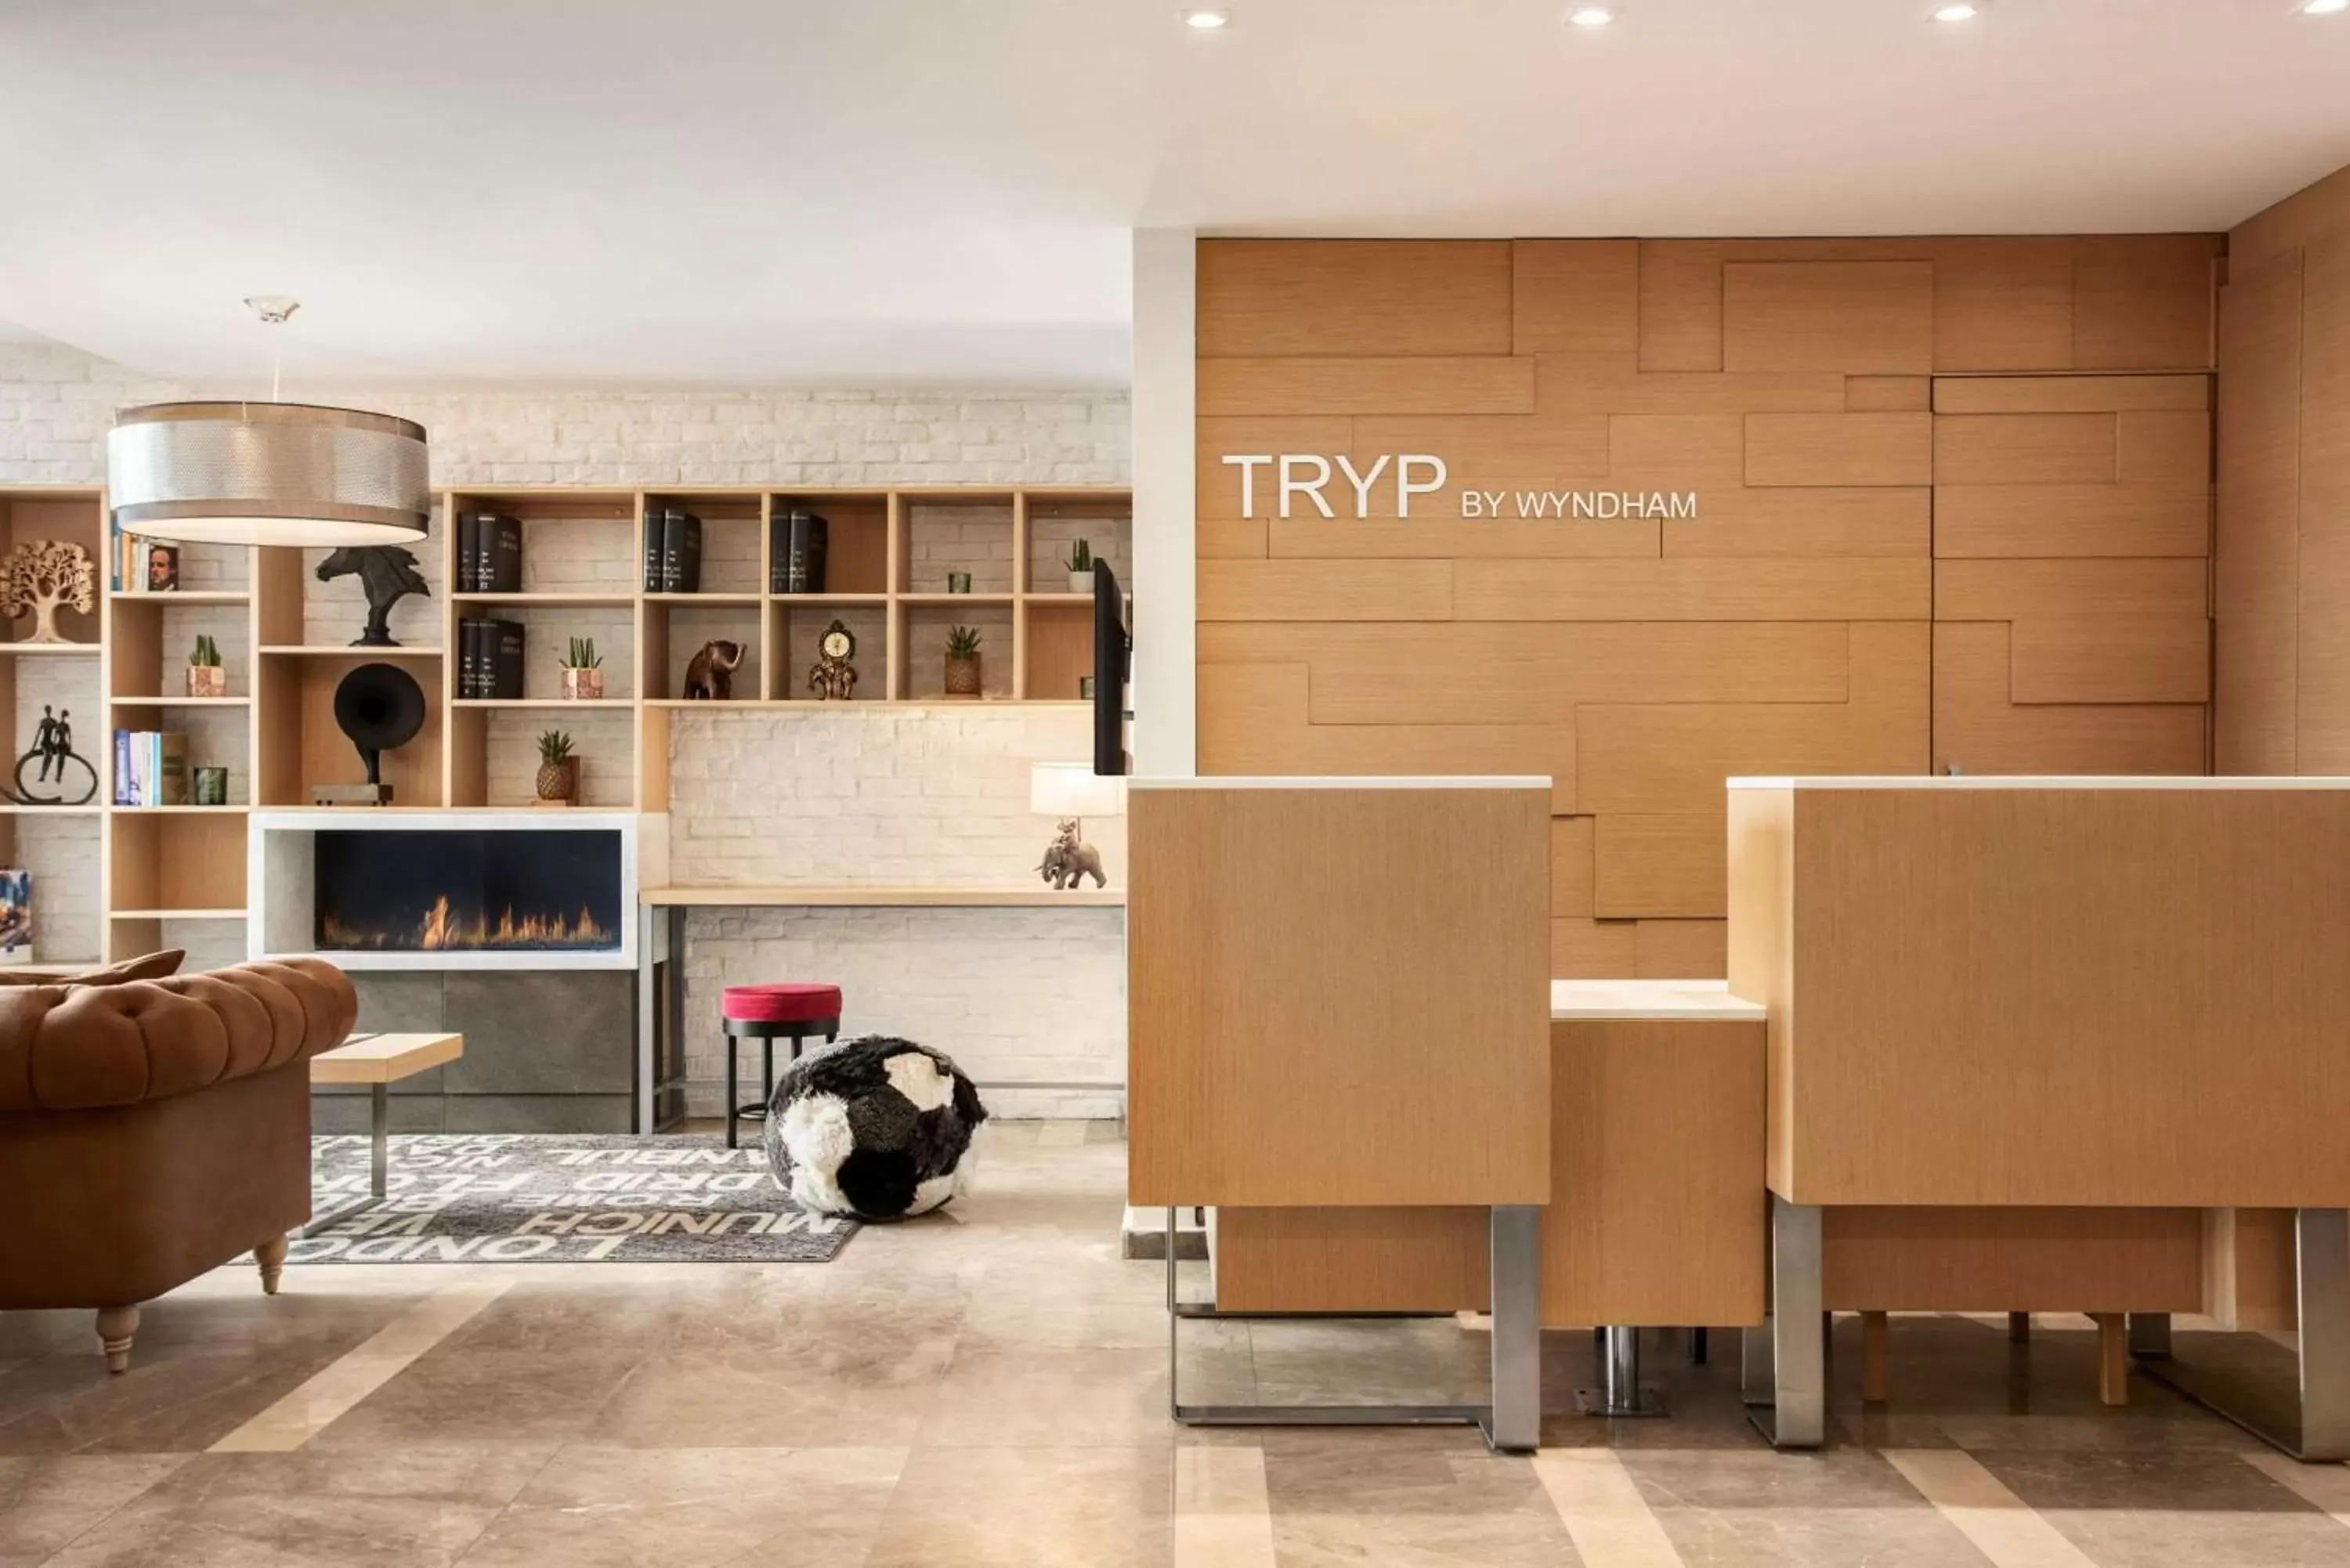 Lobby or reception in TRYP by Wyndham Ankara Oran